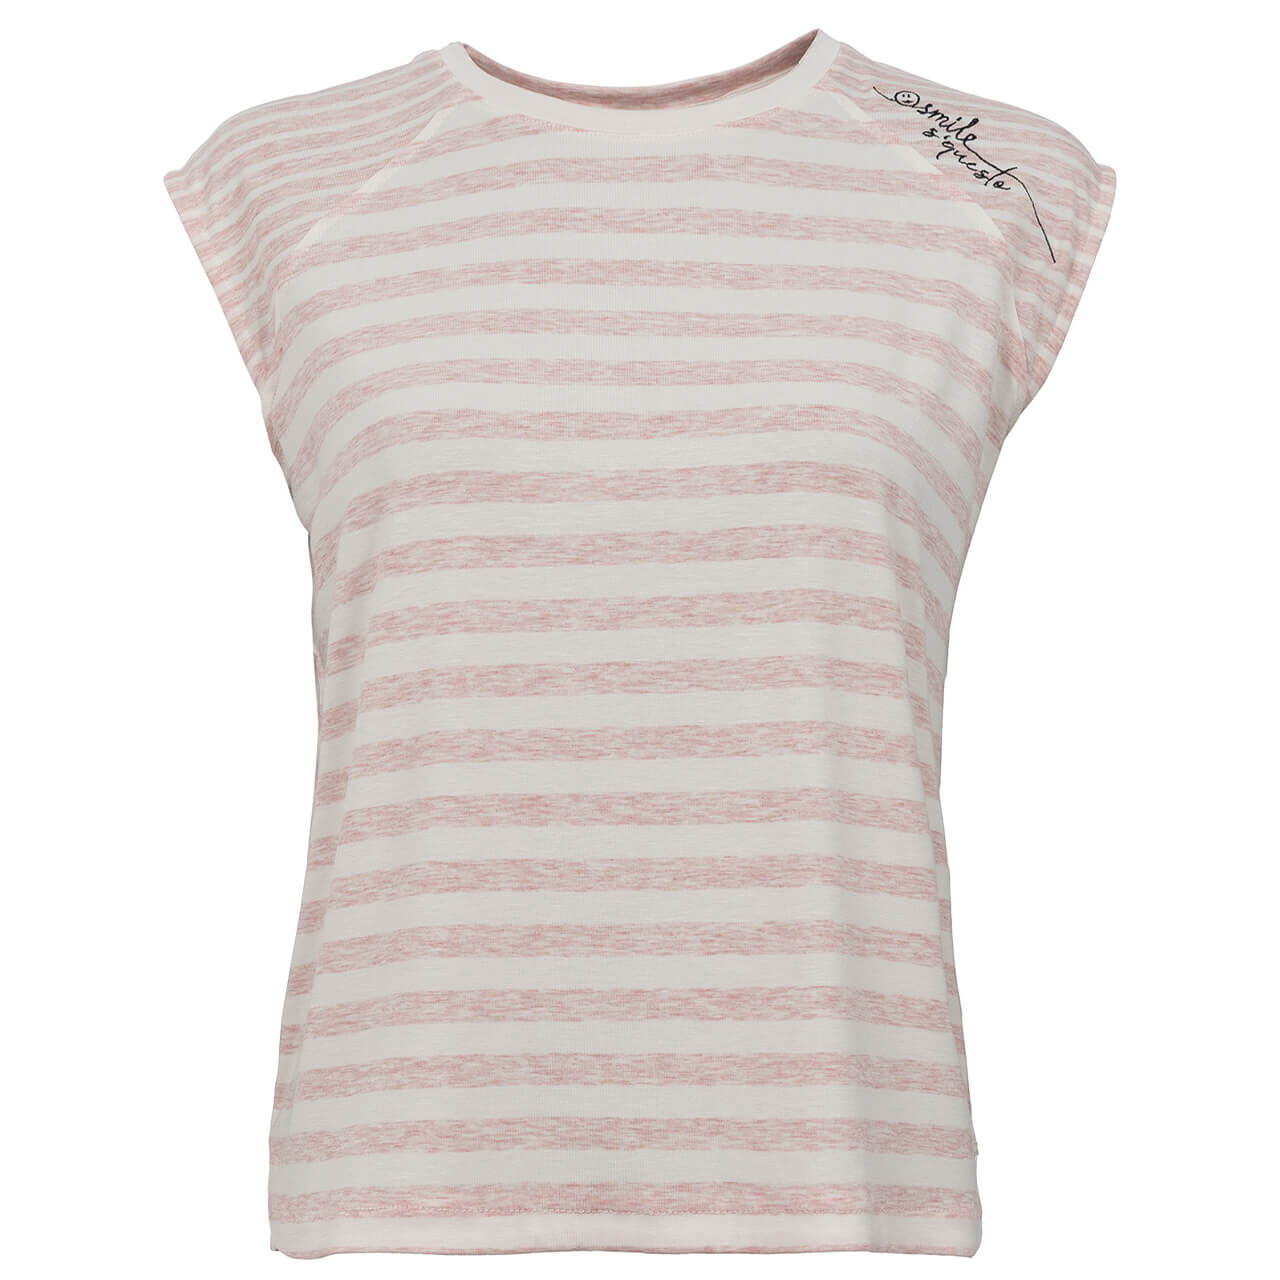 Soquesto T-Shirt für Damen in Hellrosa gestreift, FarbNr.: 1301